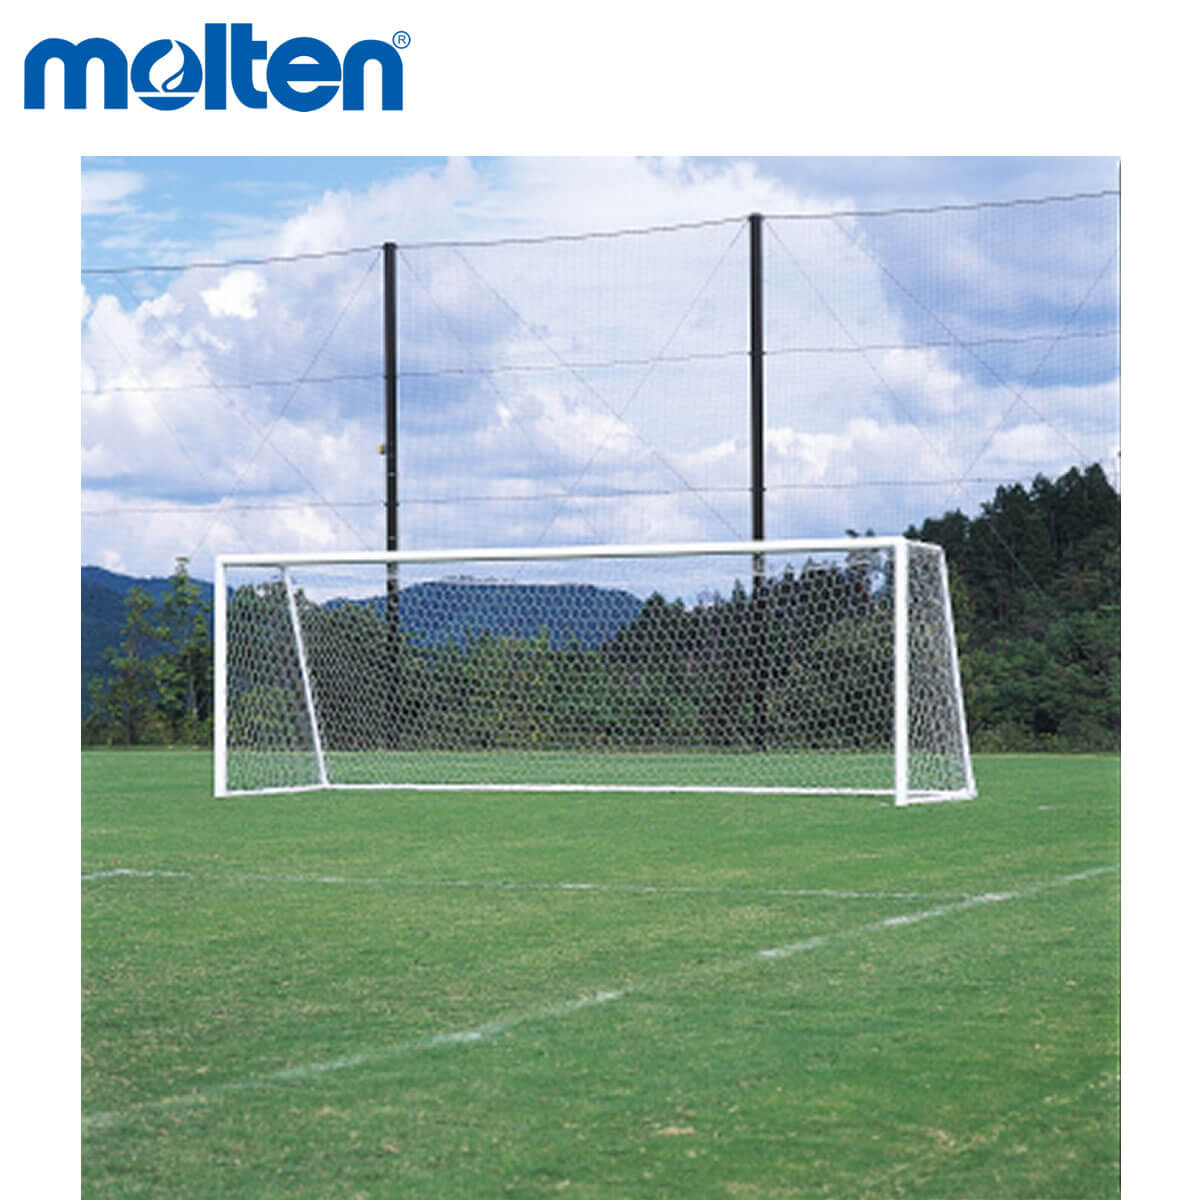 Molten Zfn10 アソシエーションフットボール行き先趣旨インターネット 並て用 サッカー エクィップメント 道具 モルテン 21 取り寄せ Vnmsport Com